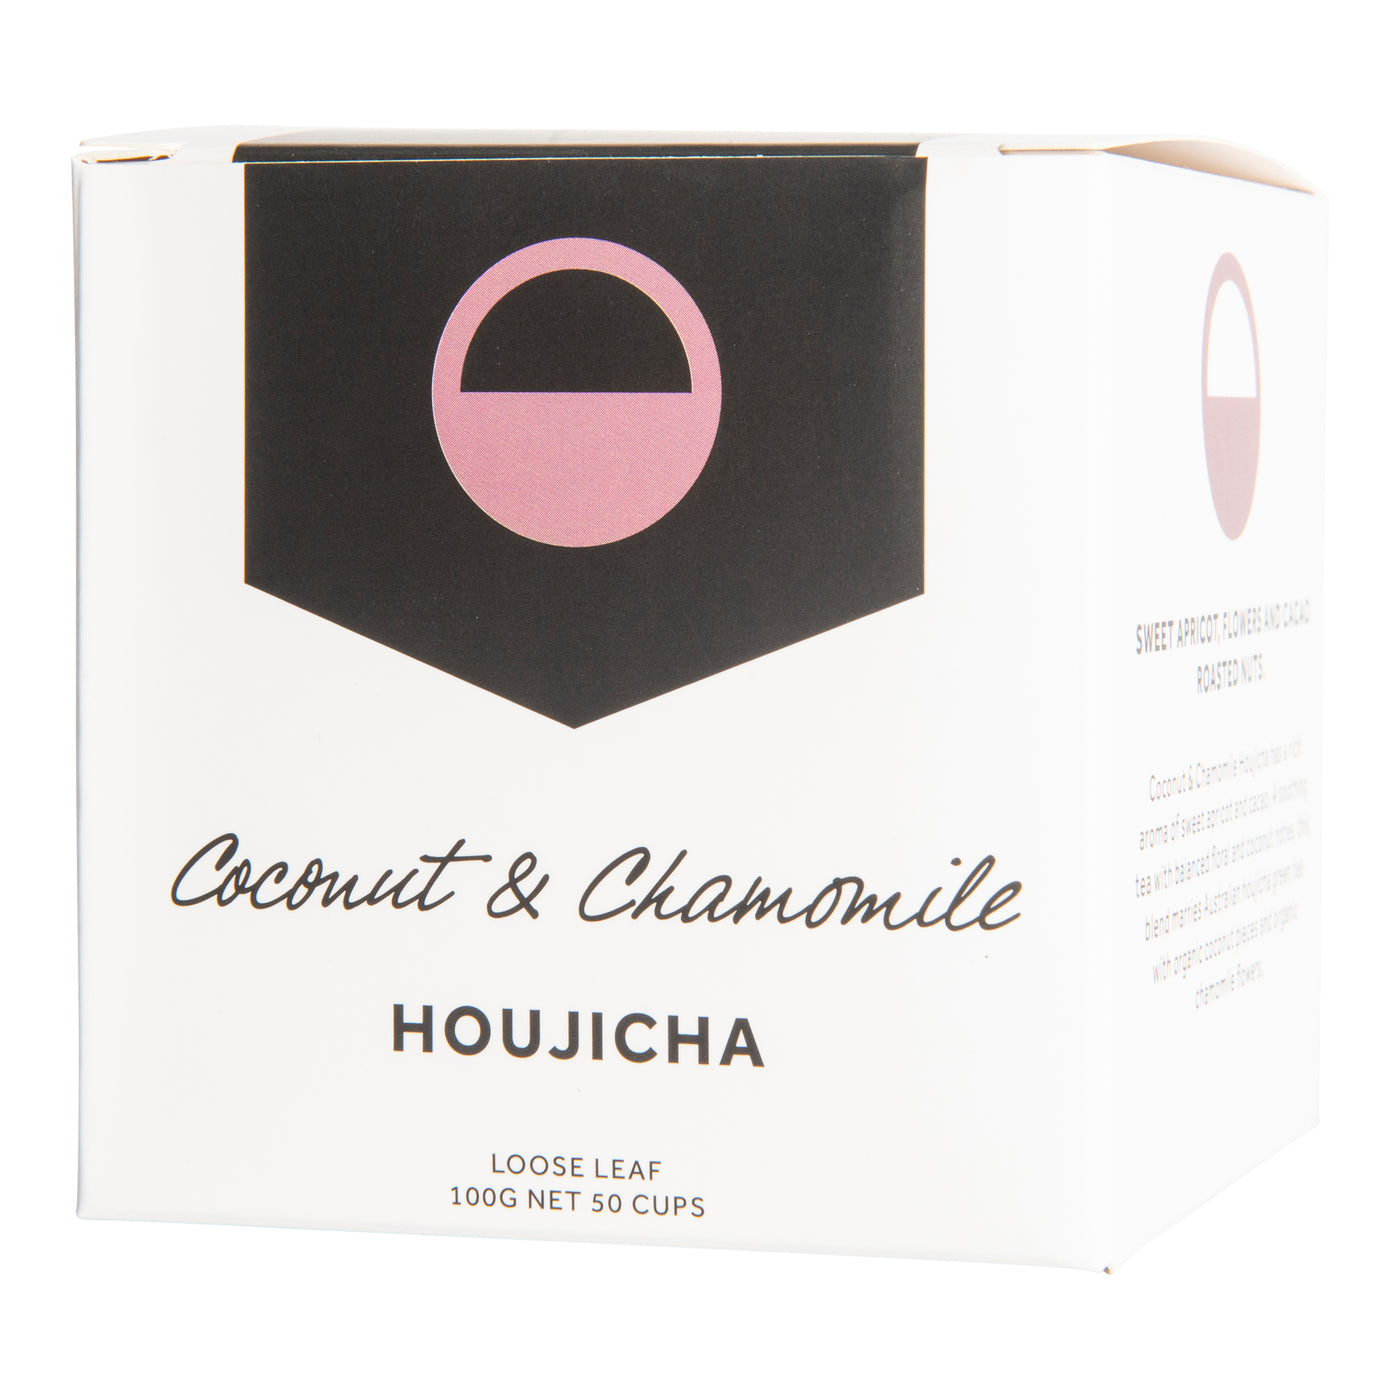 Coconut & Chamomile Houjicha Tea